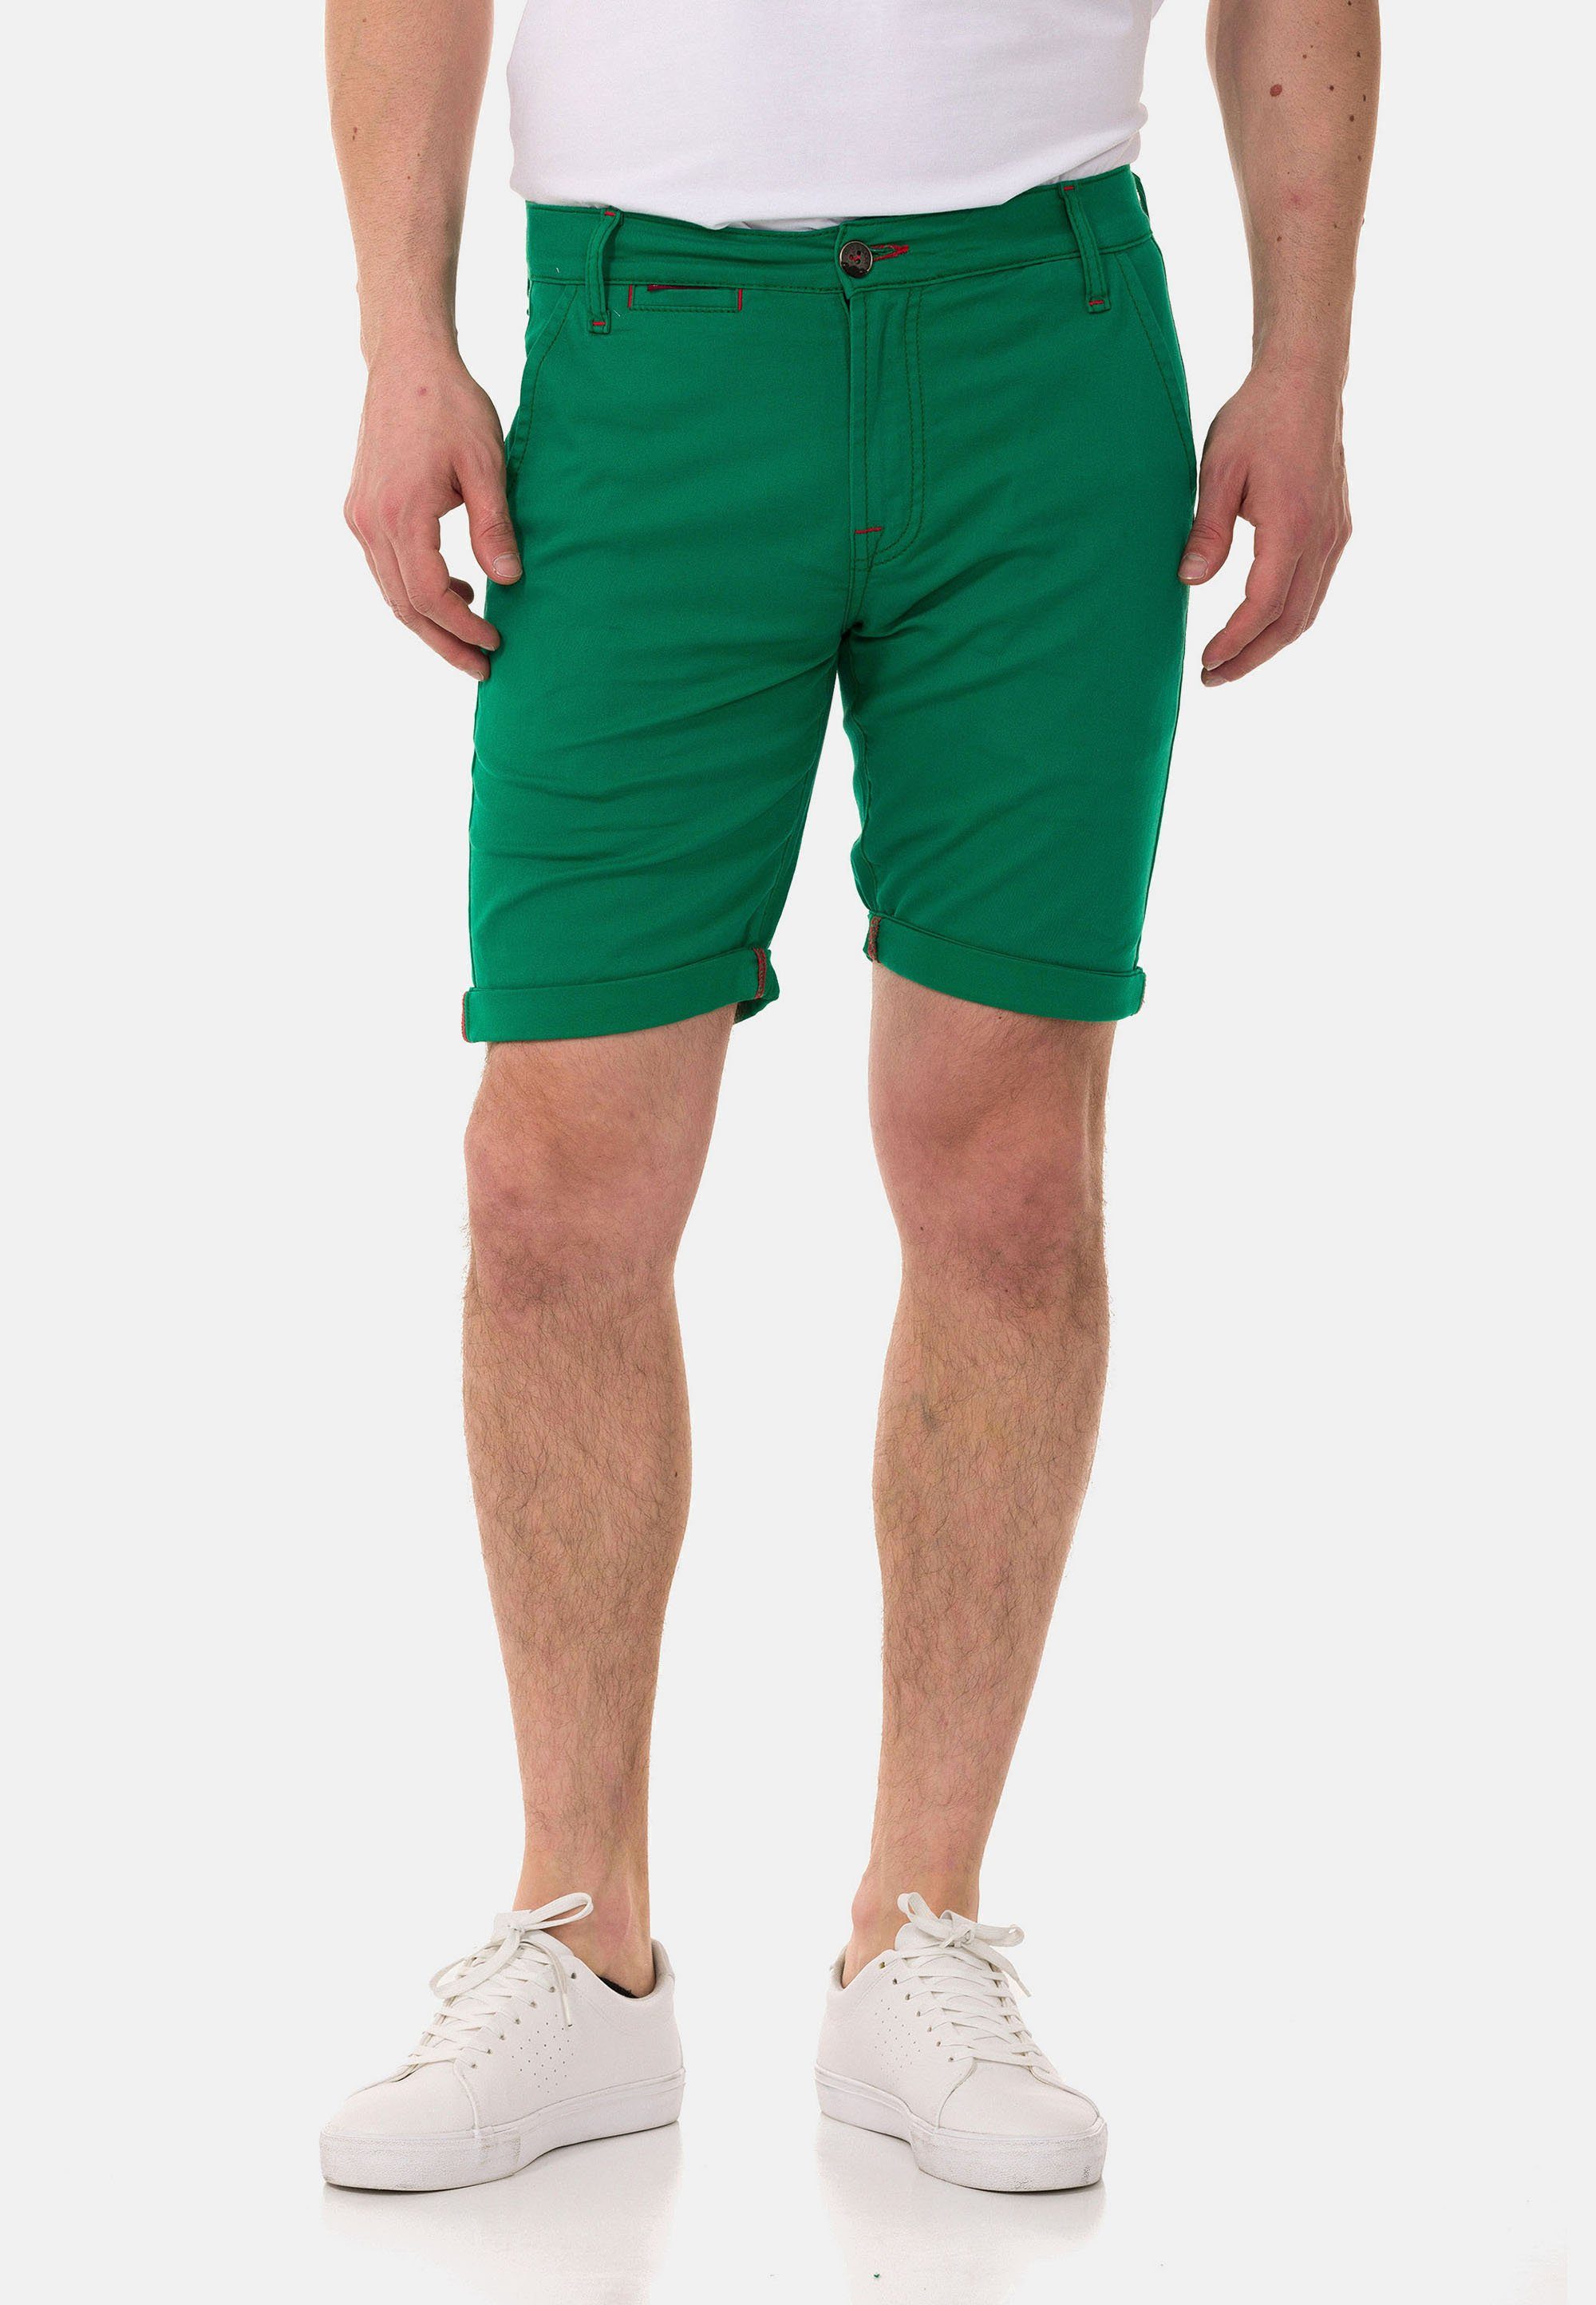 Cipo & Baxx Shorts im einfarbigen Look grün